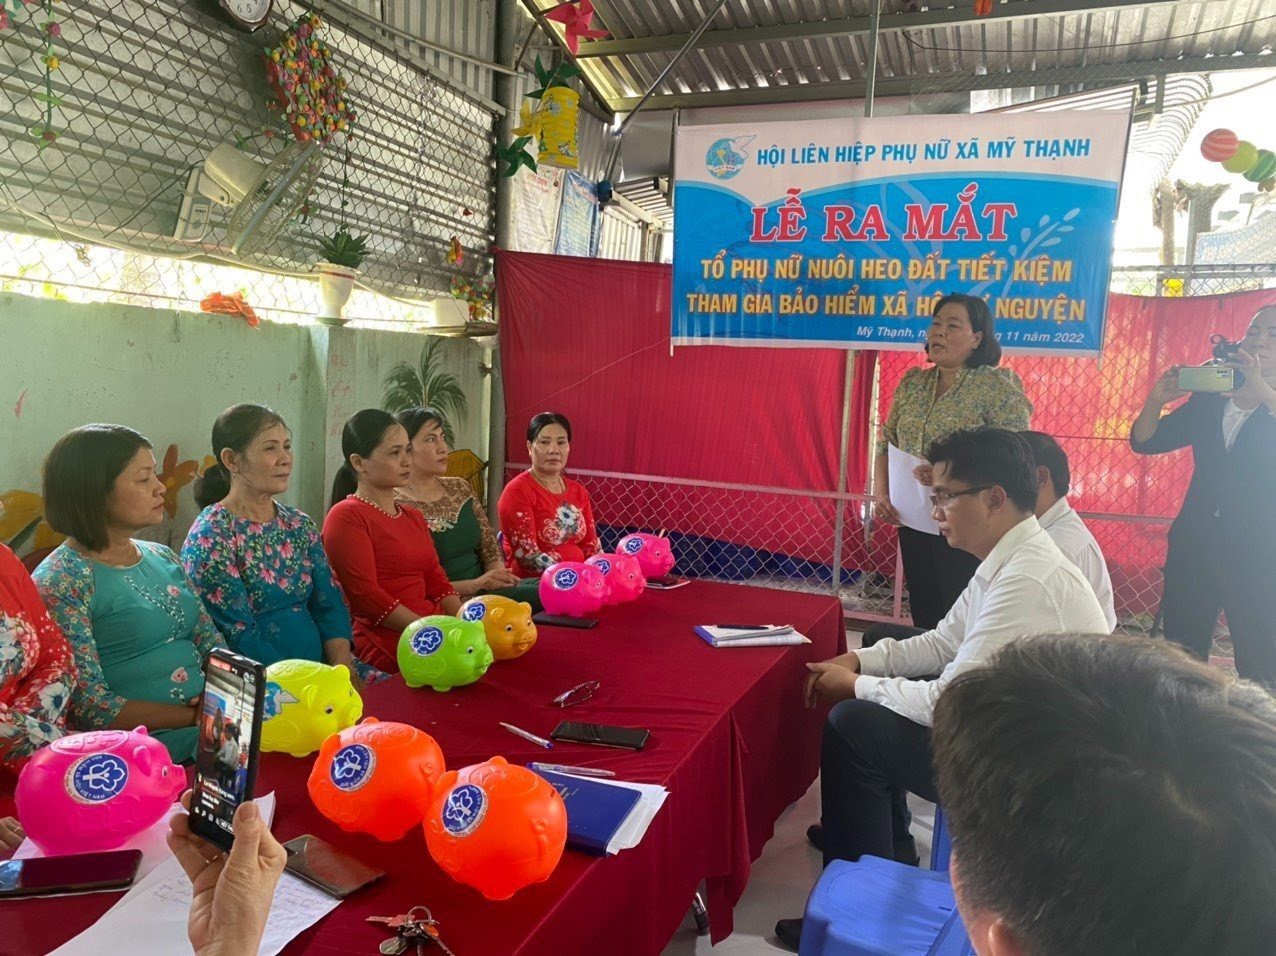 Các hội viên phụ nữ phấn khởi tham gia “Nuôi heo đất tiết kiệm tham gia BHXH tự nguyện” tại tỉnh Long An.